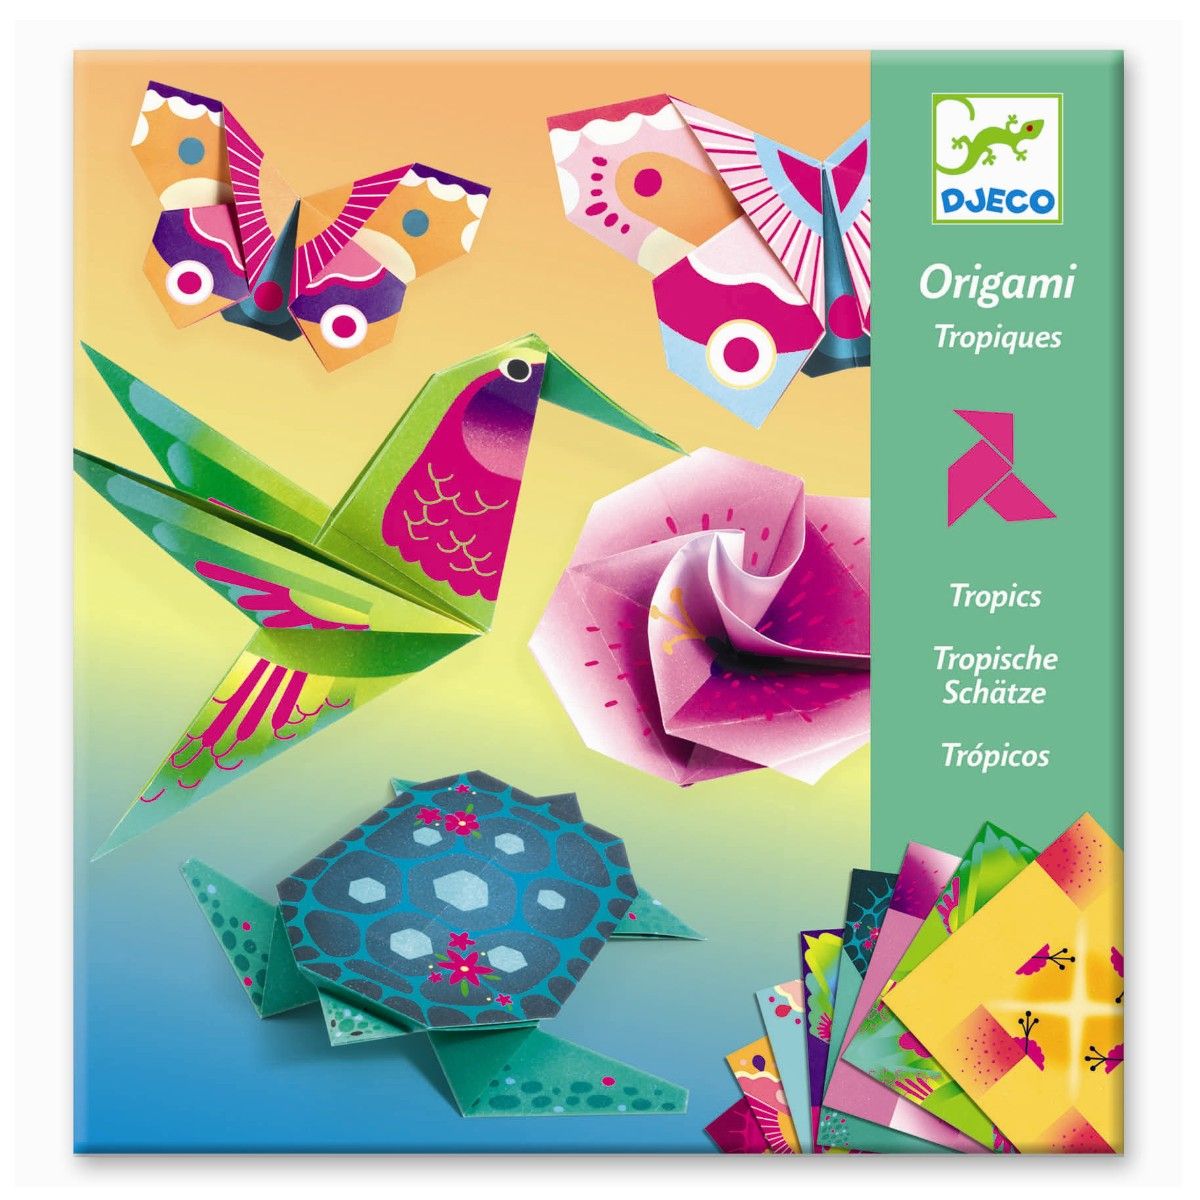 djeco origami sæt med tropiske dyr